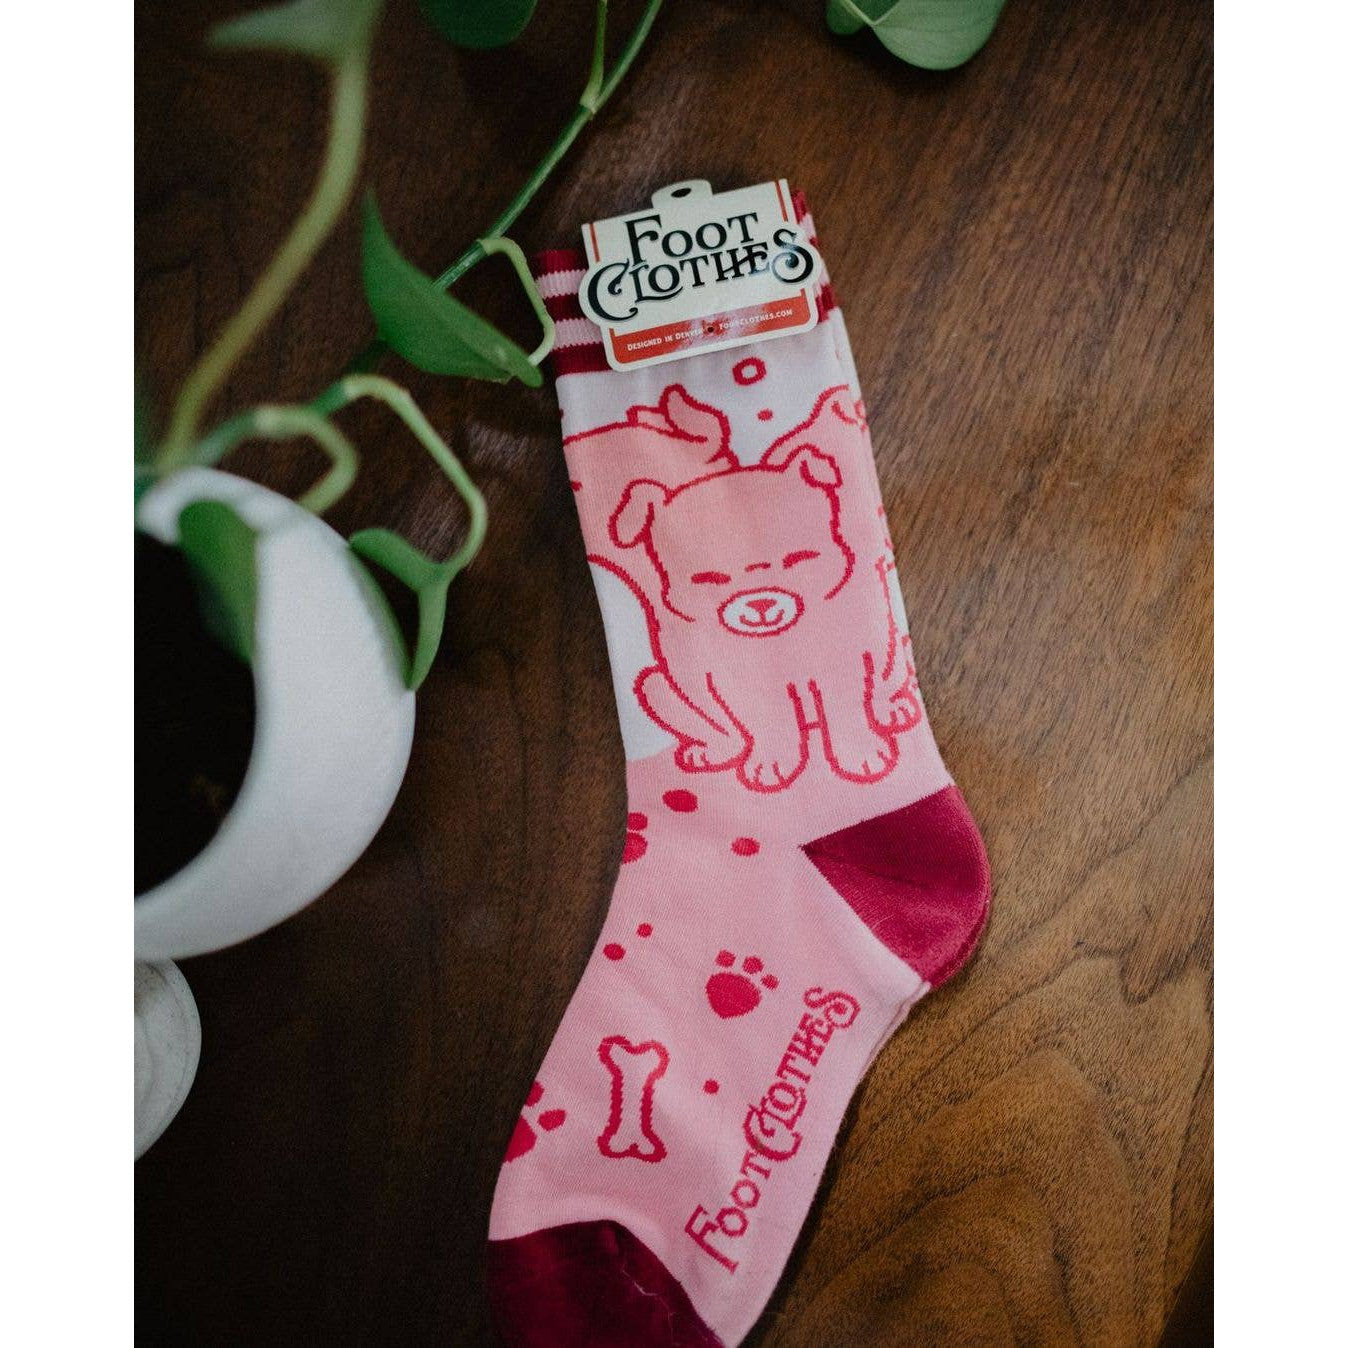 Cute Cerberus Socks | Mythical Multi-headed Dog Footwear